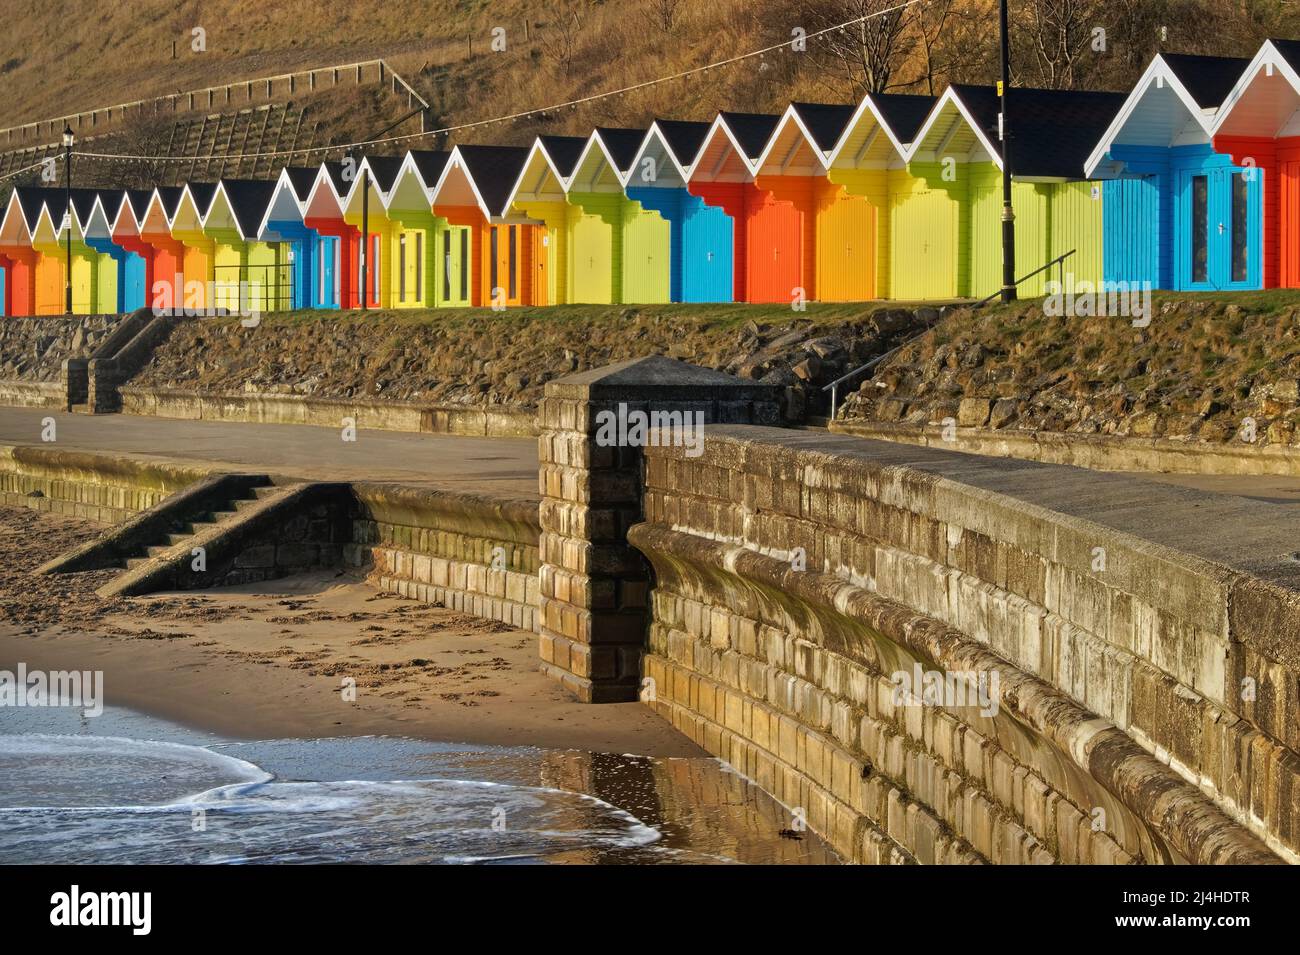 Royaume-Uni, North Yorkshire, Scarborough, Chalets de plage colorés sur North Bay Promenade. Banque D'Images